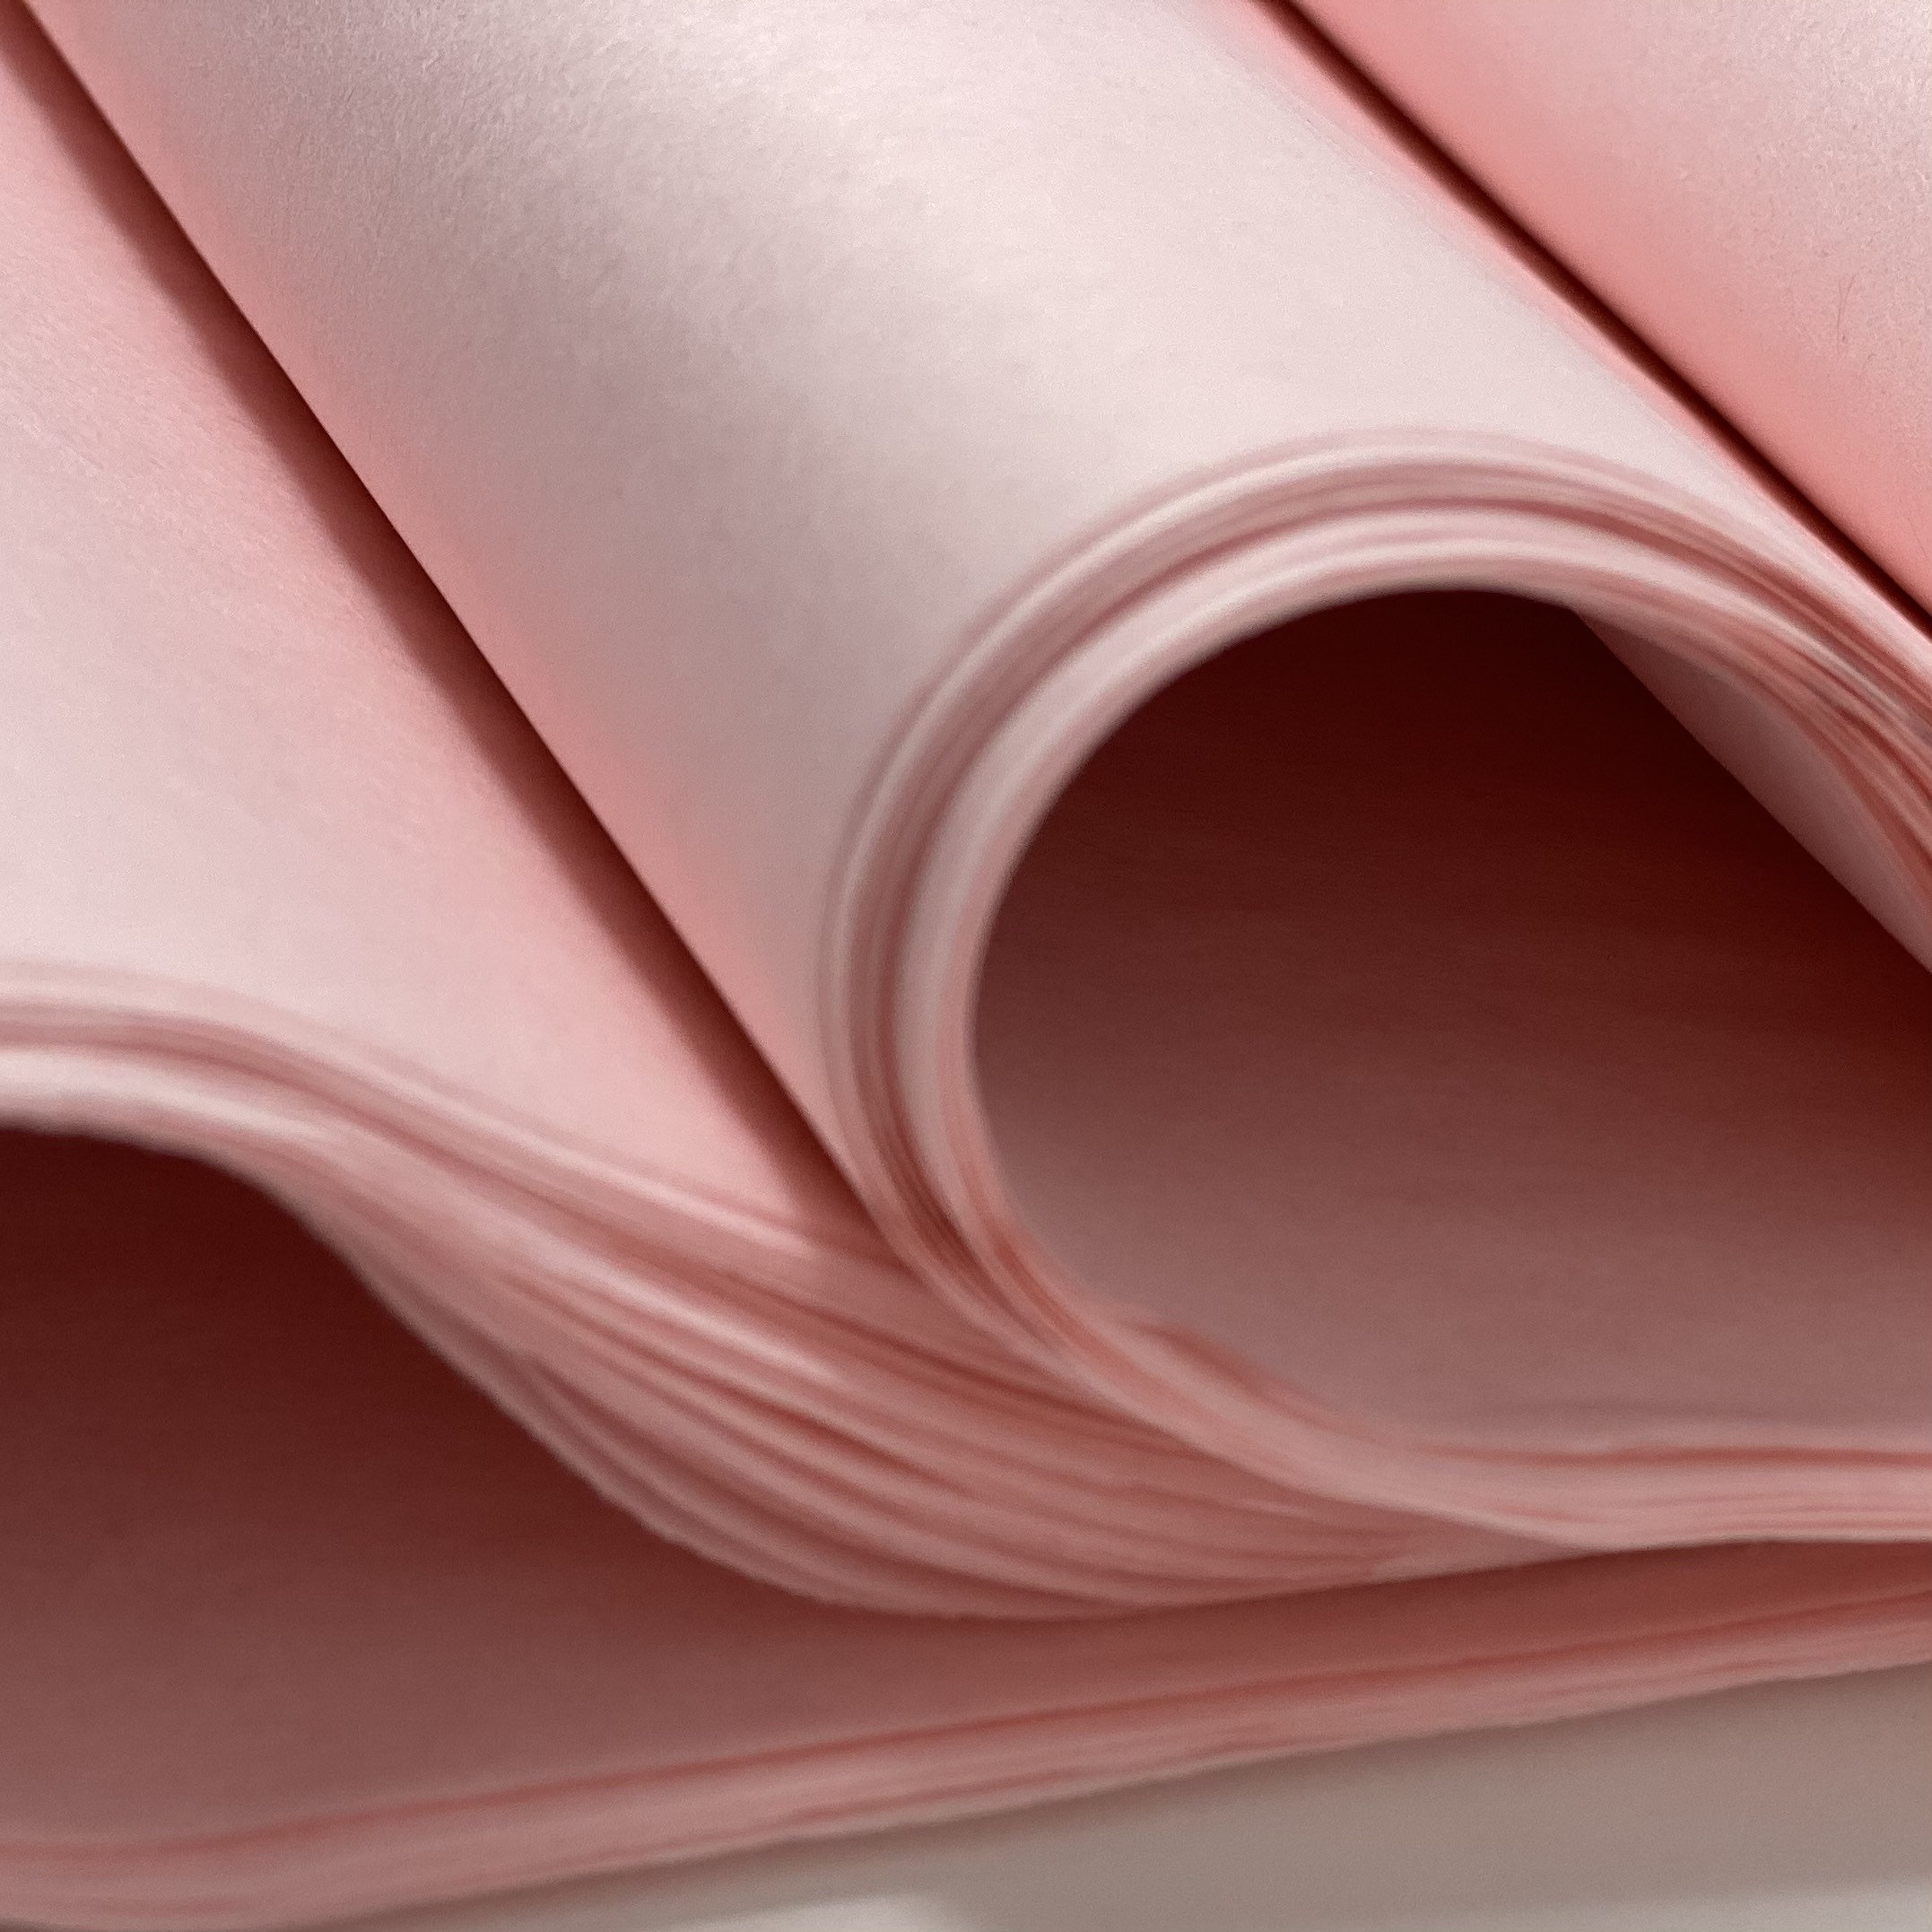 Light Pink Tissue Paper 10-20 Sheets 20 X 30 Matte Premium Pale